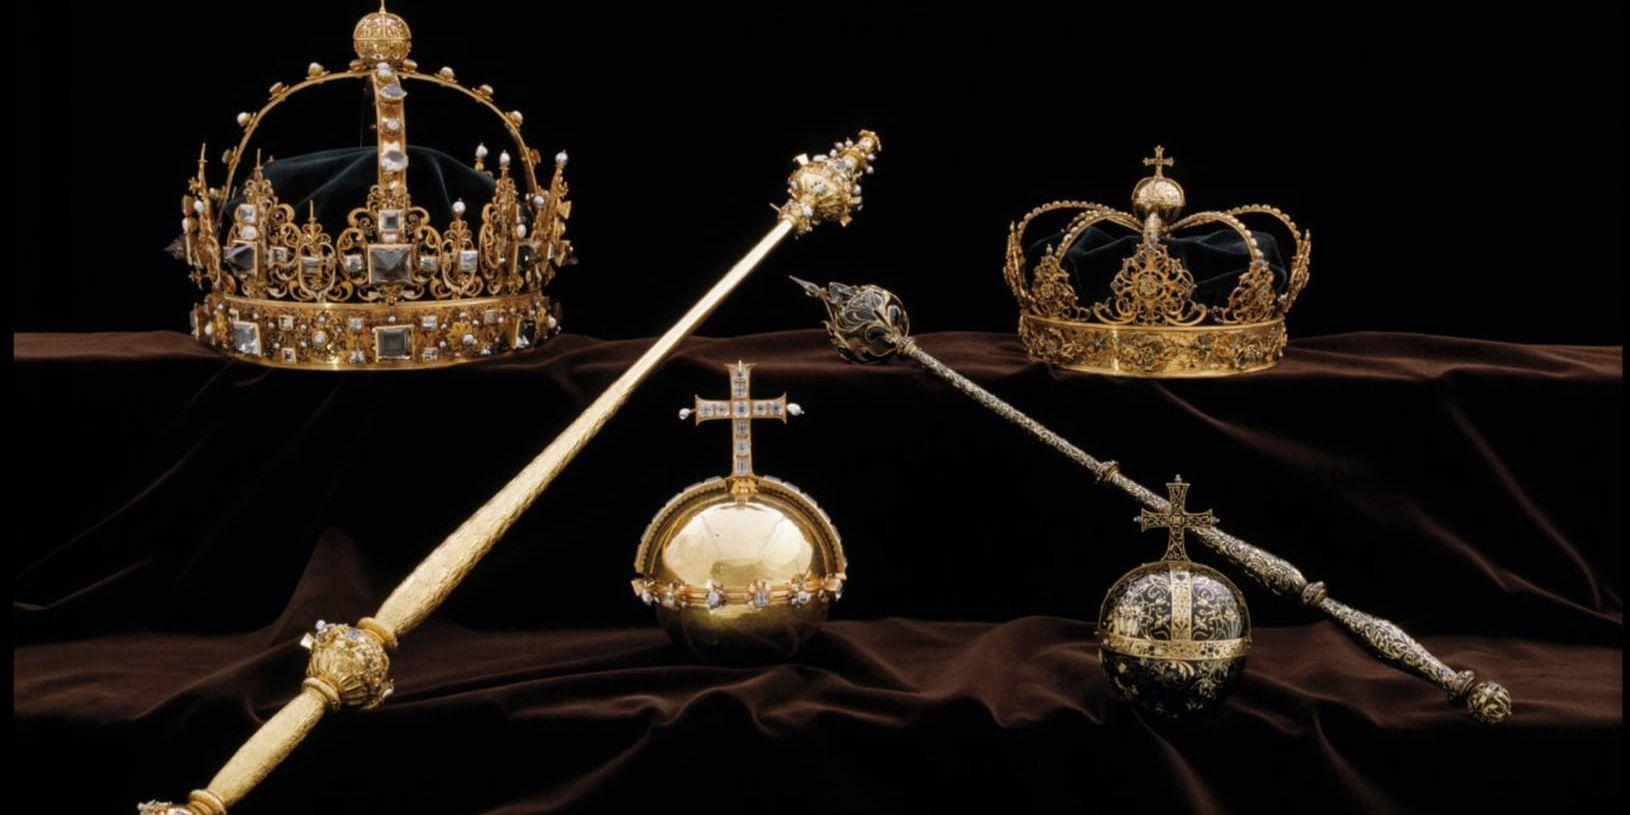 Karl IX och drottning Kristina den äldres begravningsregalier förvarades i Strängnäs domkyrka. Under en kupp i somras stals de två kronorna och ett riksäpple ur en glasmonter i kyrkan. Bild: Polisen.